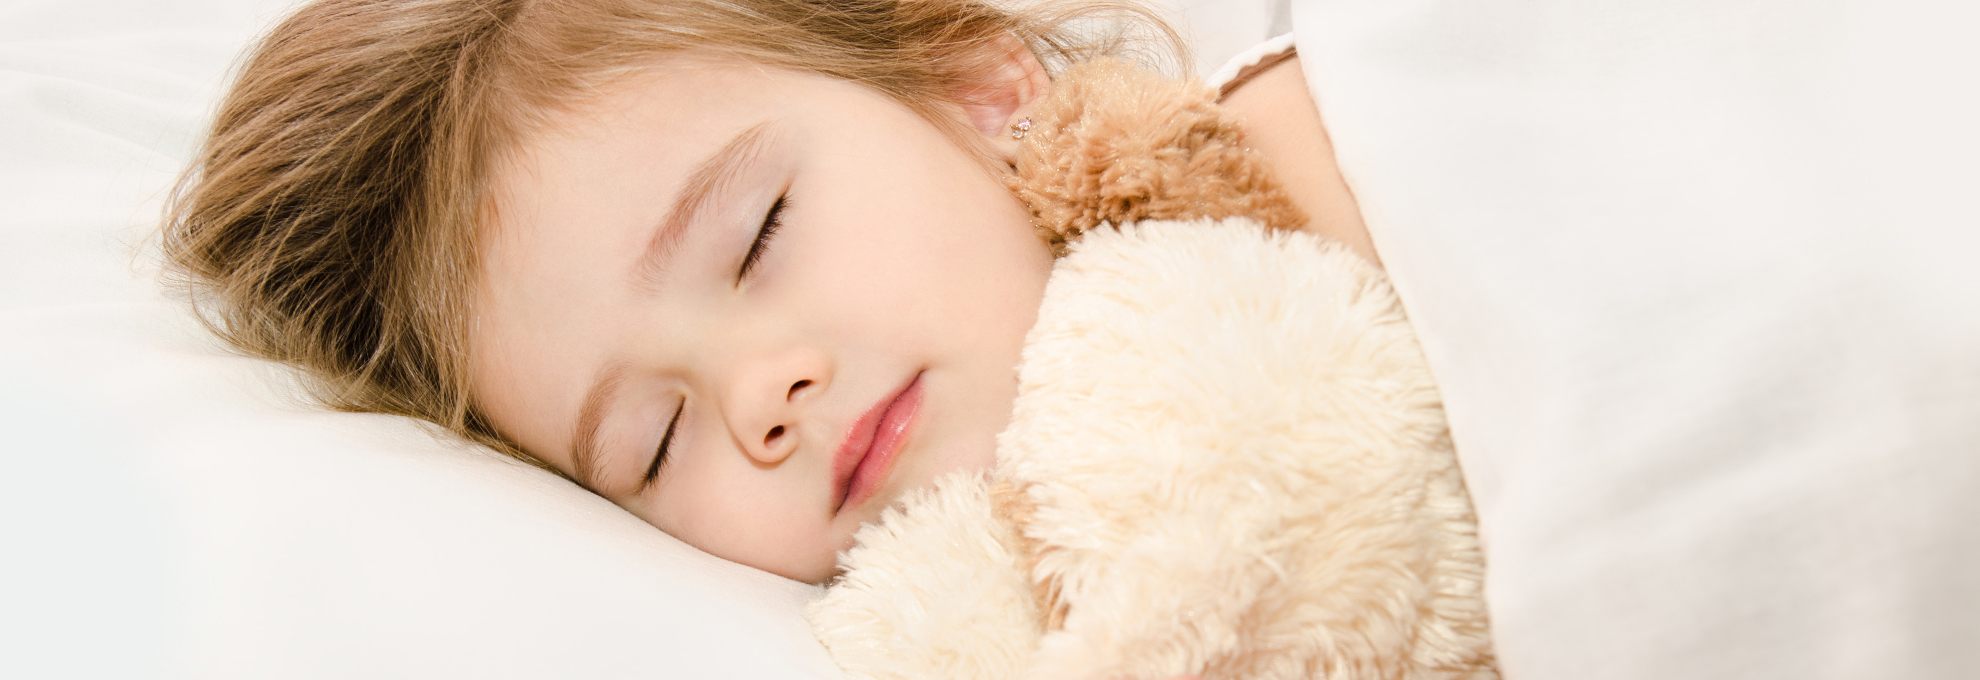 הפרעות שינה והתפקוד היומי בילדים